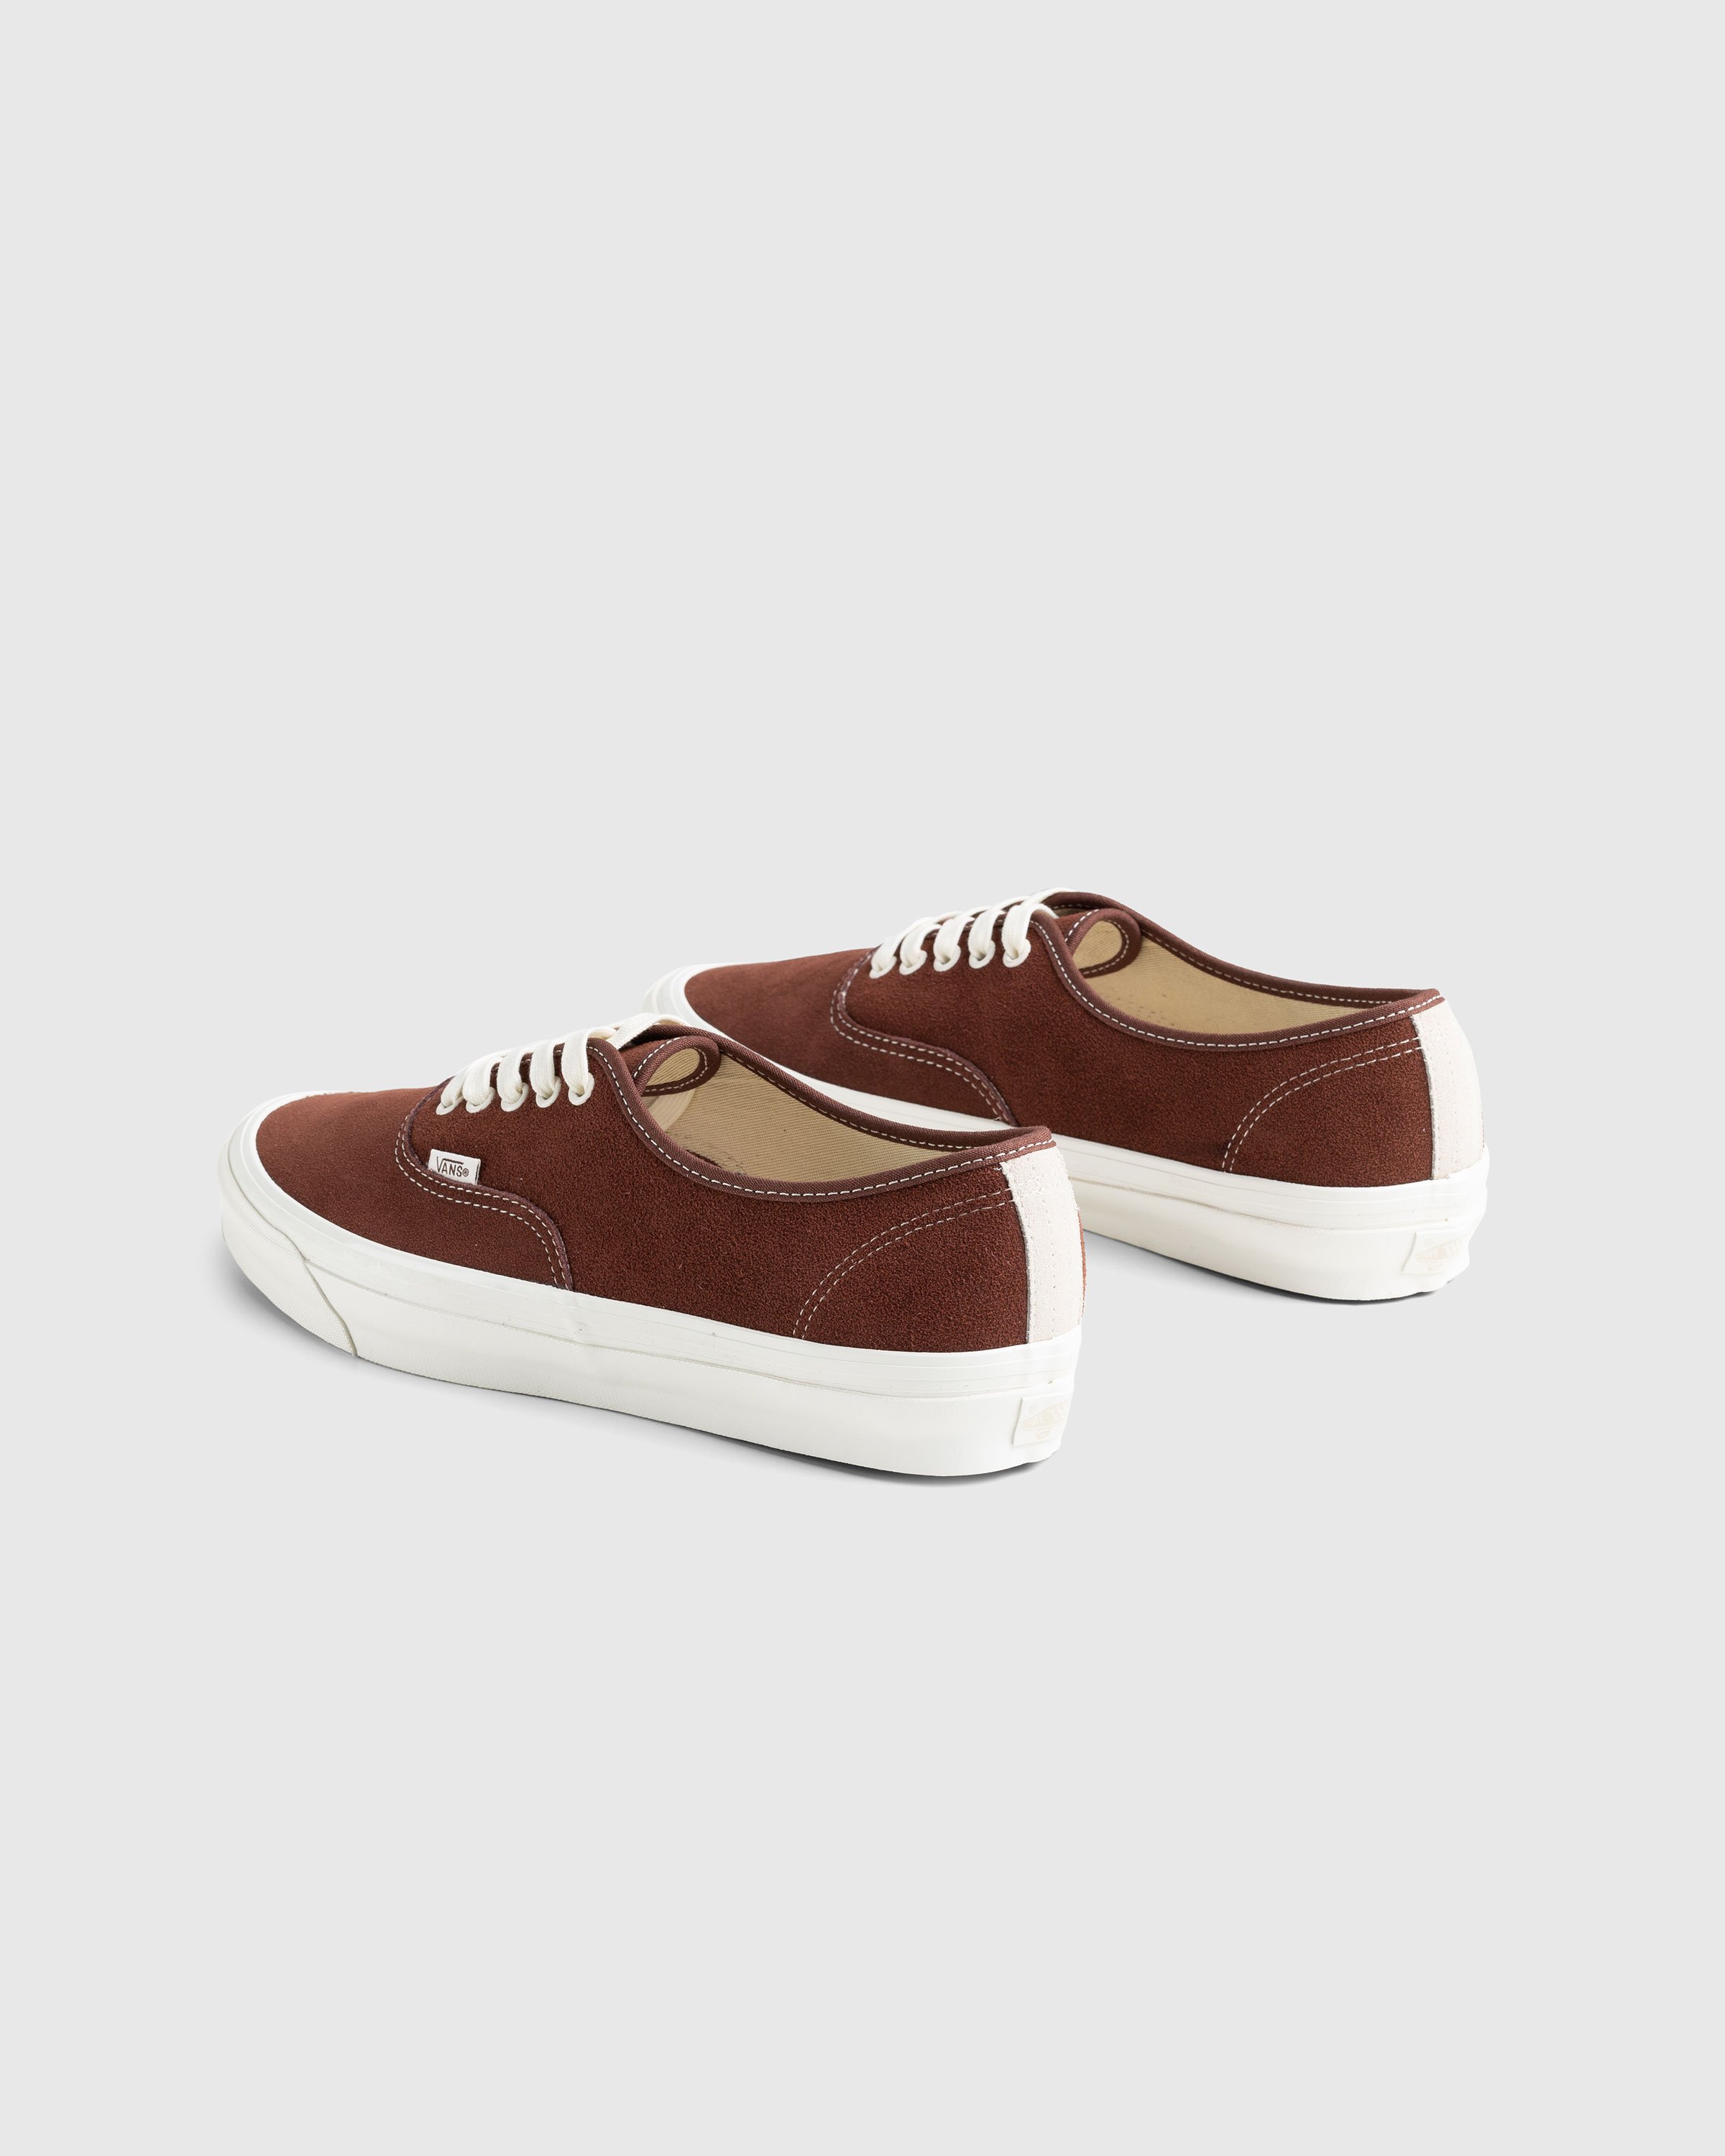 Vans - UA OG Authentic LX Suede Brown - Footwear - Brown - Image 4